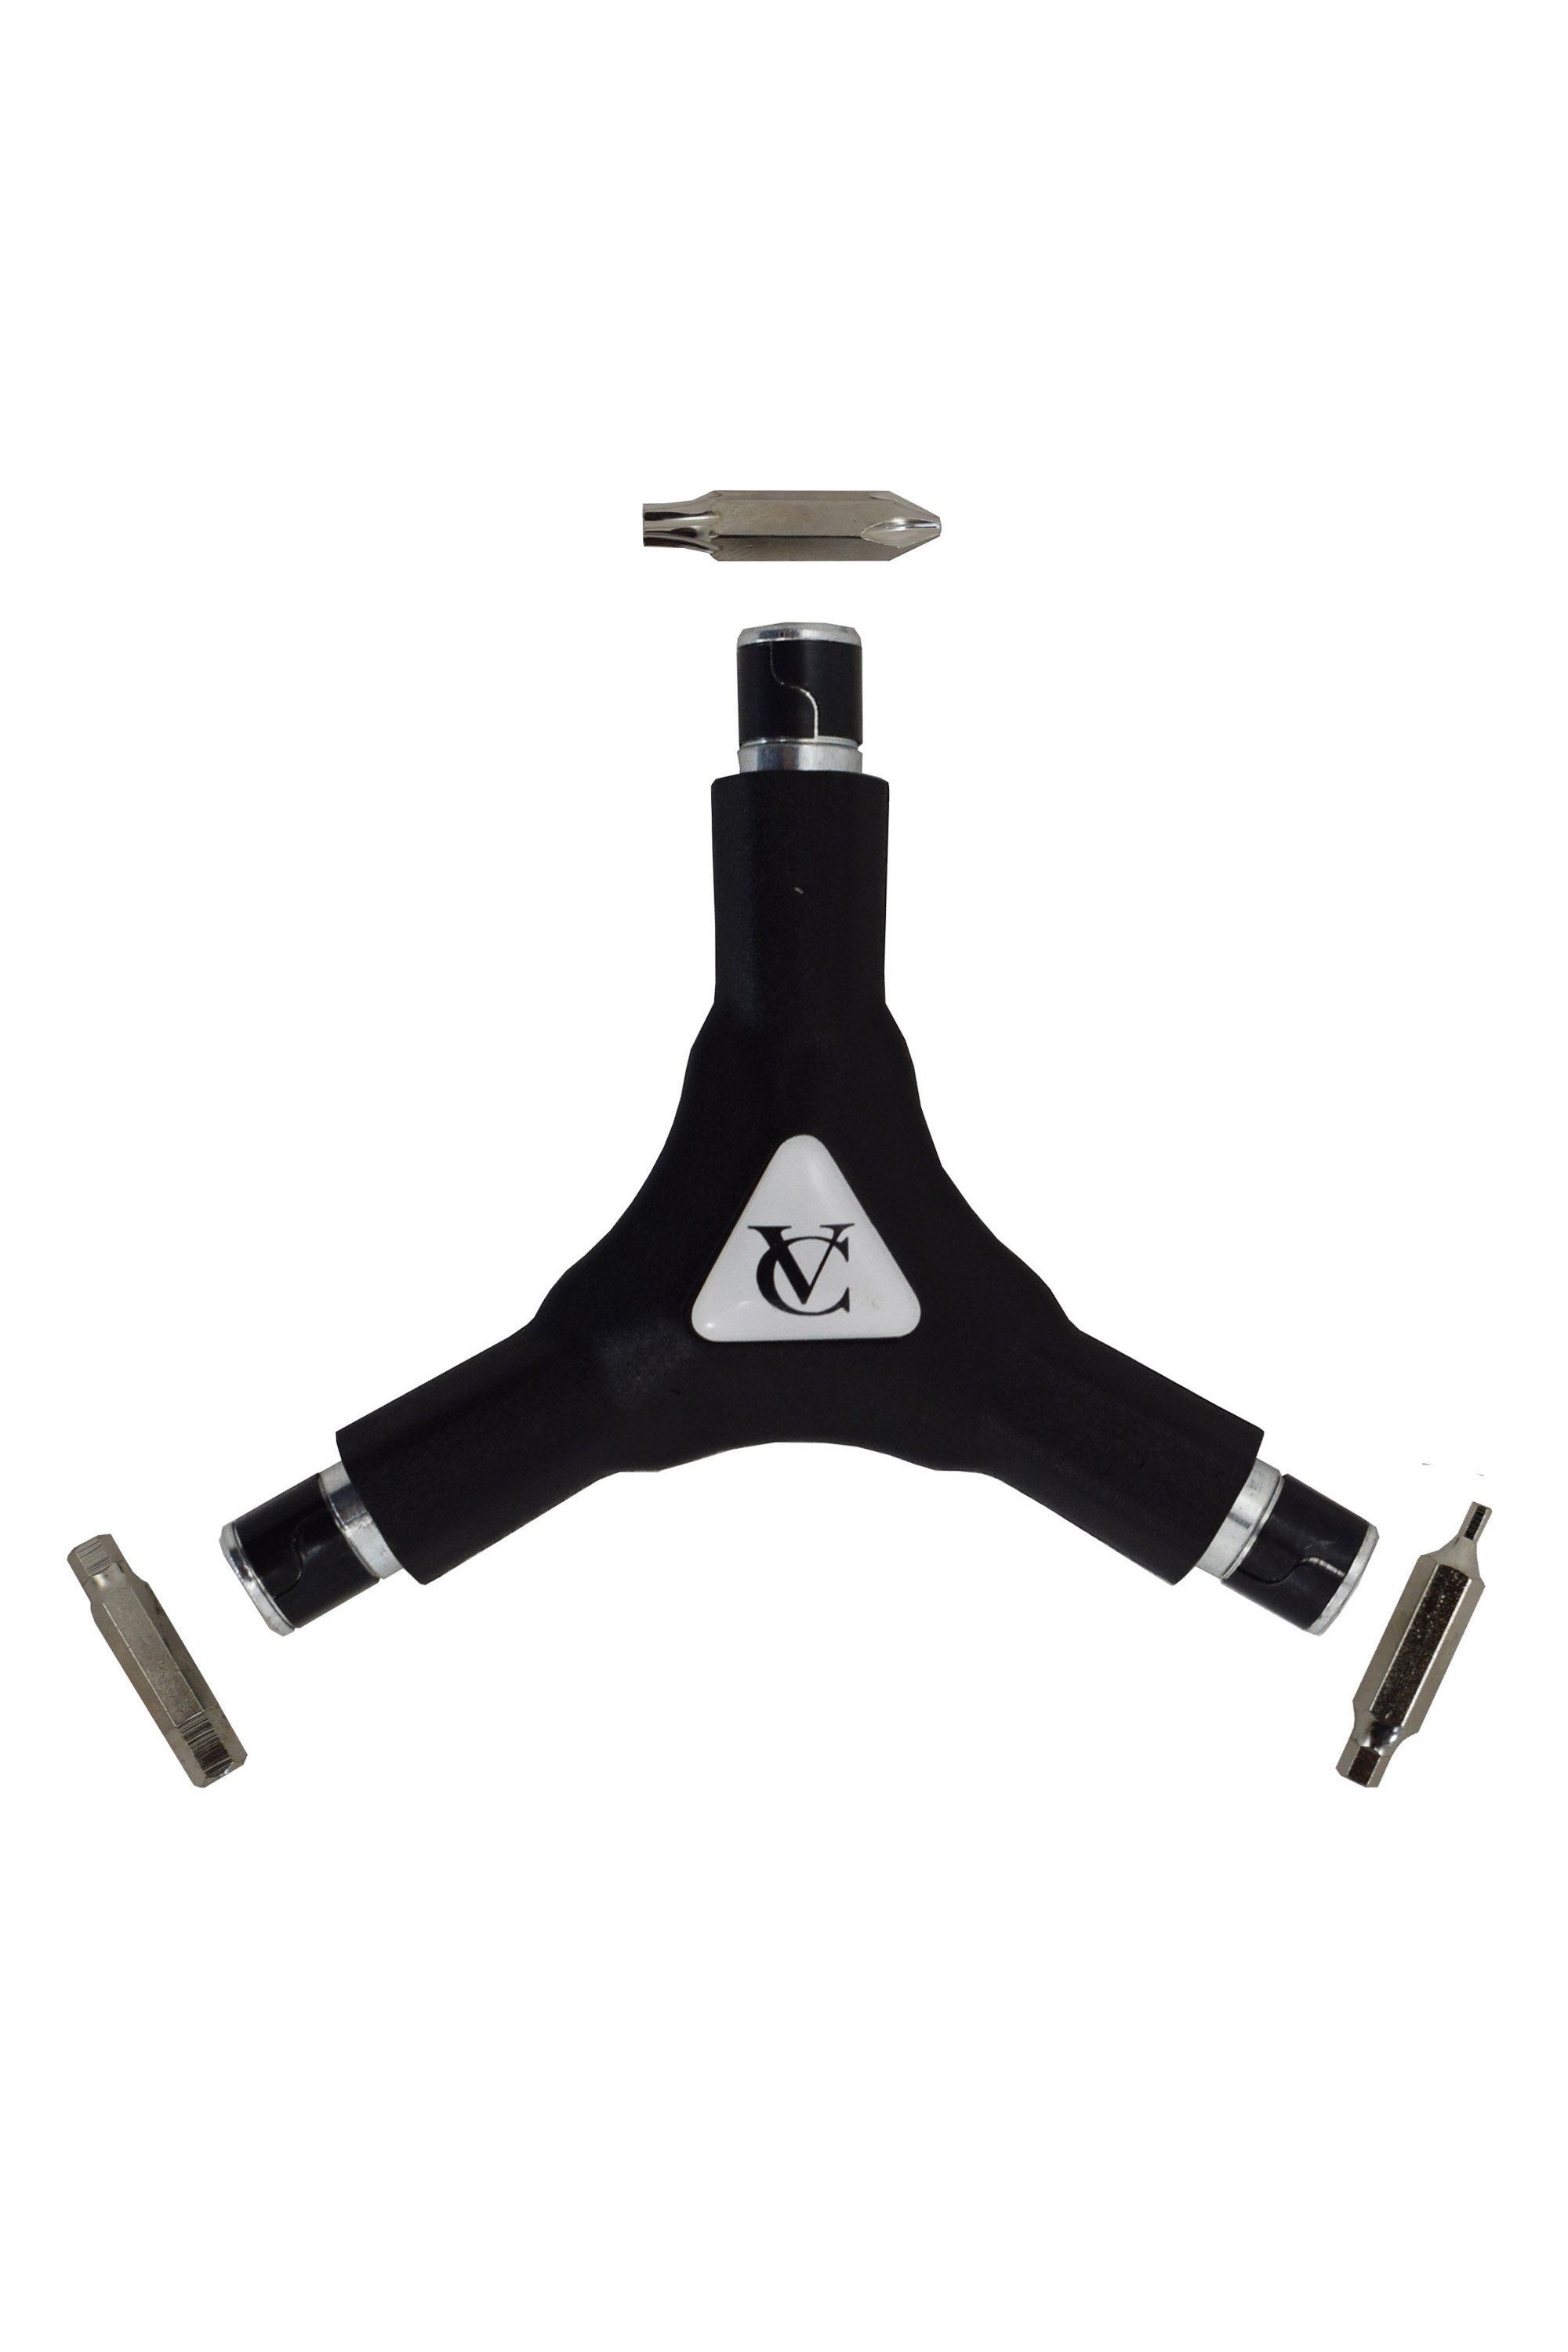 Y-wrench Handheld Magnetic Bike Multitool -